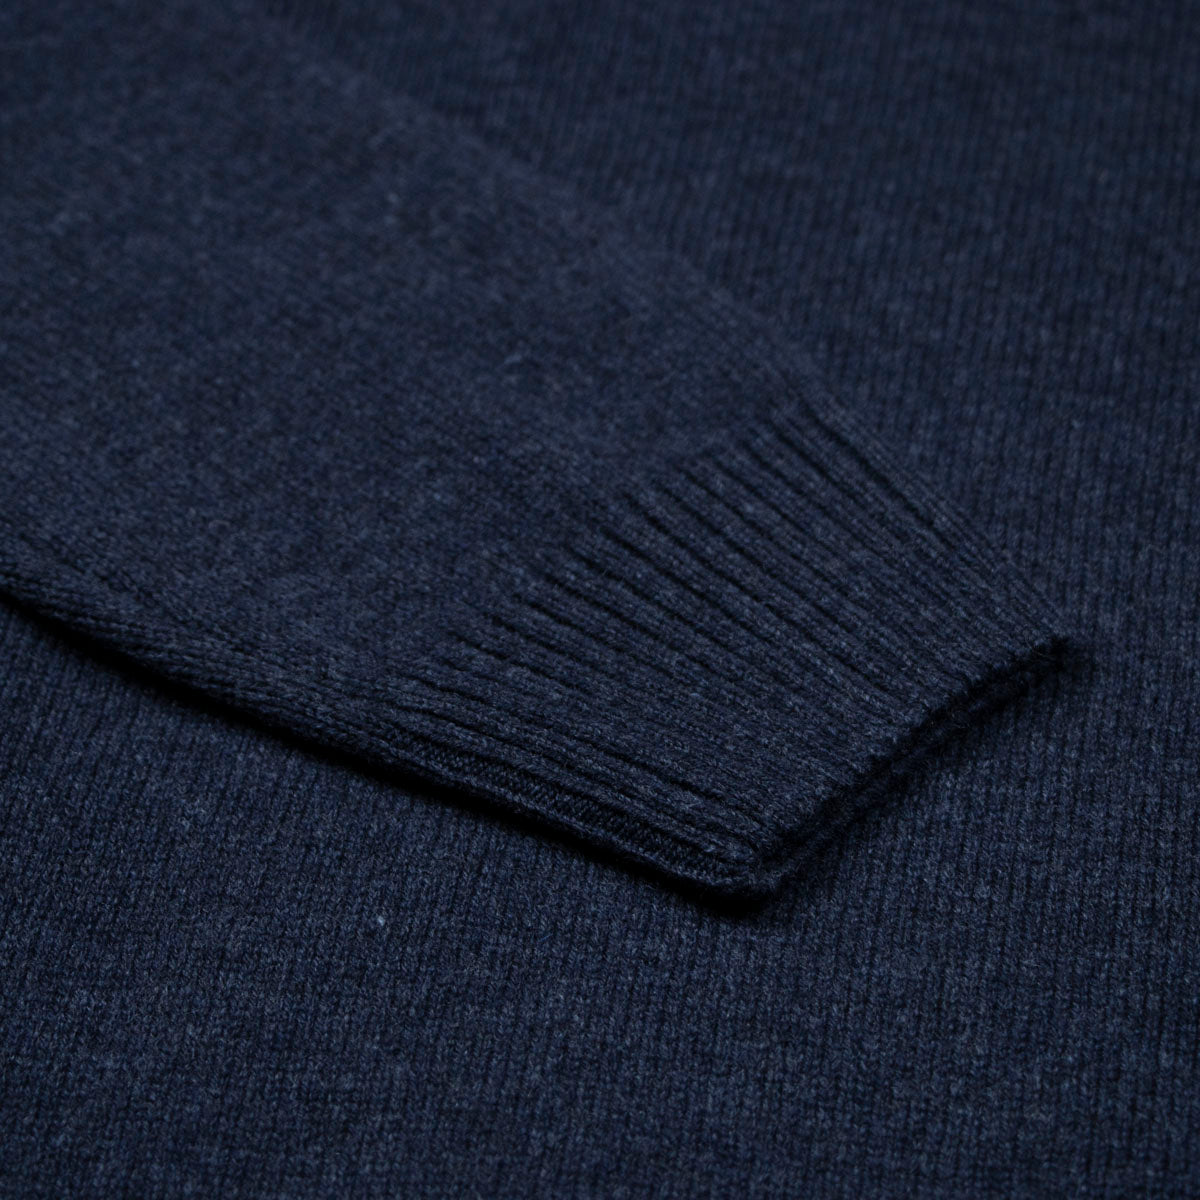 Navy Contrast Virgin Wool & Cashmere Zip Neck Sweater  Robert Old   